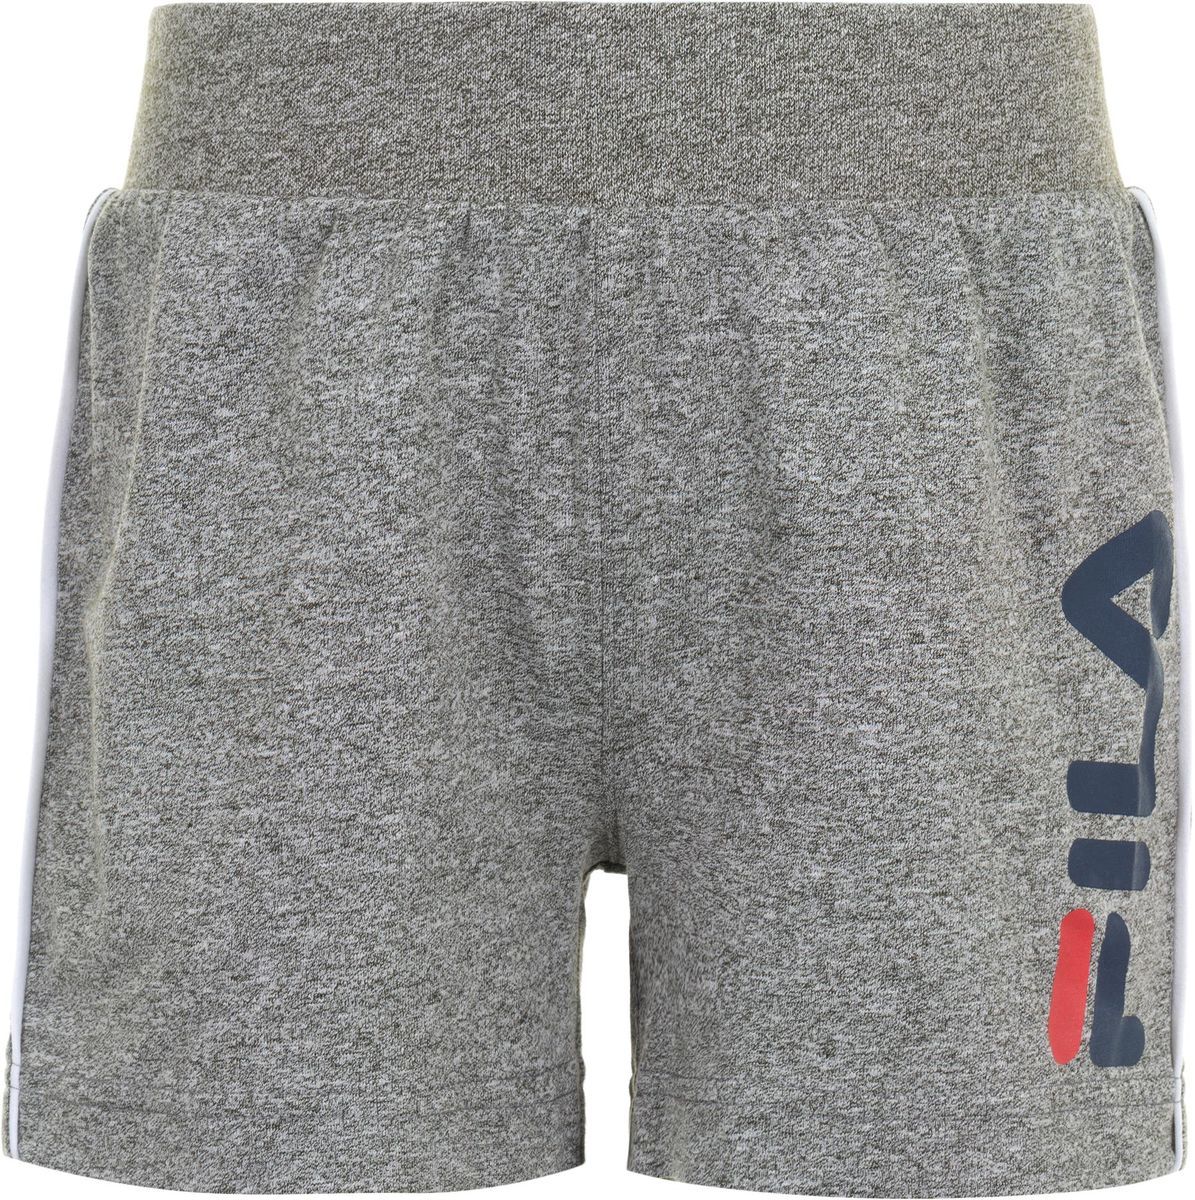    Fila Boy's Shorts, : . S19AFLSHC01-2A.  110